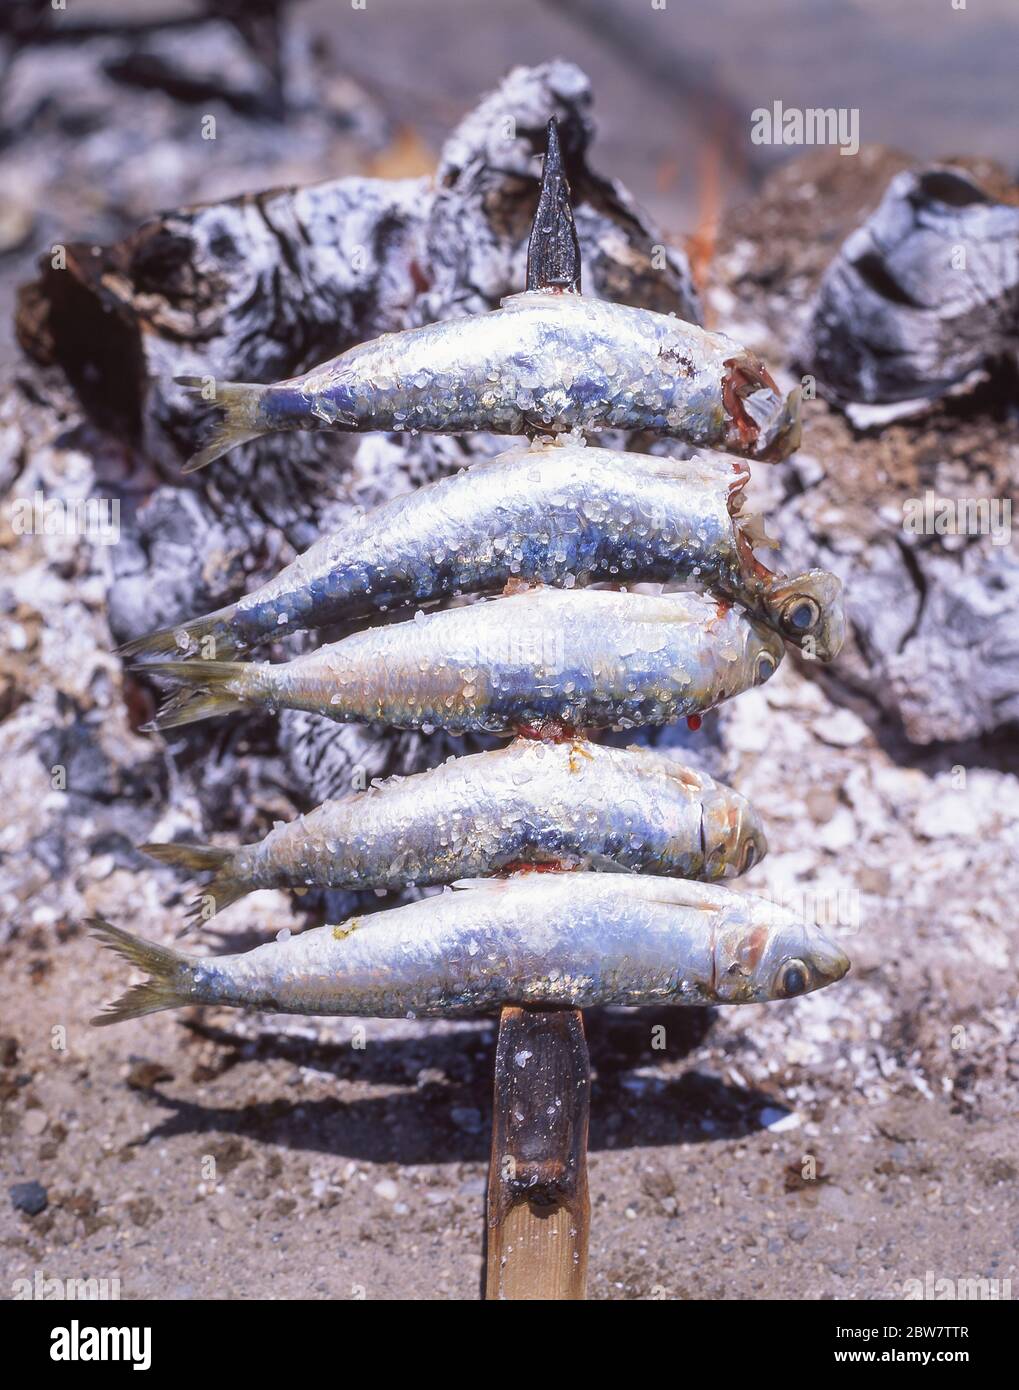 Des sardines fraîches sont cuites au barbecue sur la plage, Praia da Rocha, Portimão, région de l'Algarve, Portugal Banque D'Images